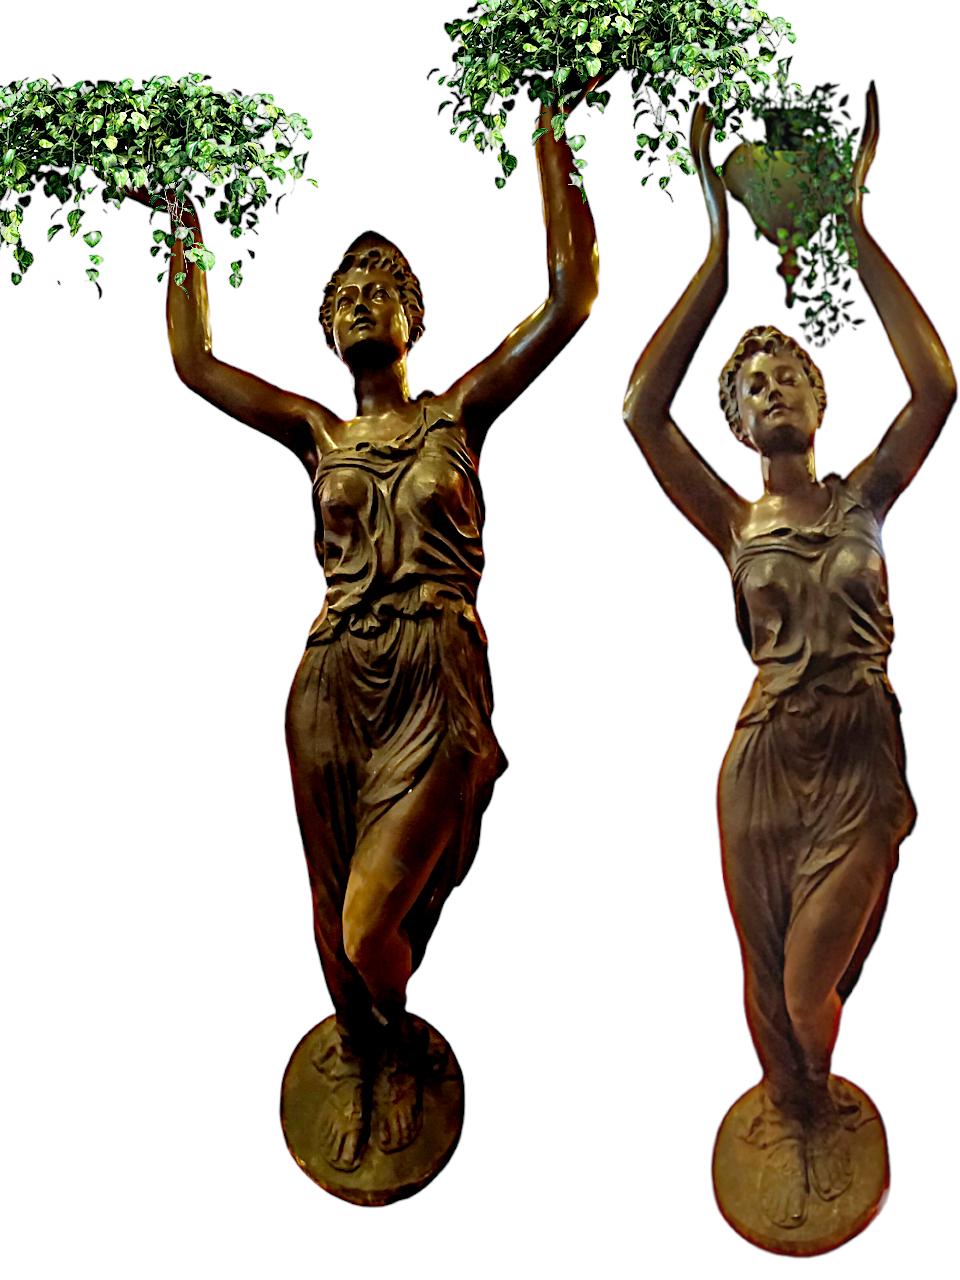 Französische Bronzeskulpturen aus dem 19. Jahrhundert - Guèridon-Statuen
(aus der zweiten Hälfte des 19. Jahrhunderts)
Zwei junge Mädchen in neoklassizistischer Kleidung sind in der Runde abgebildet: die eine hält eine Vase, die für Pflanzen und